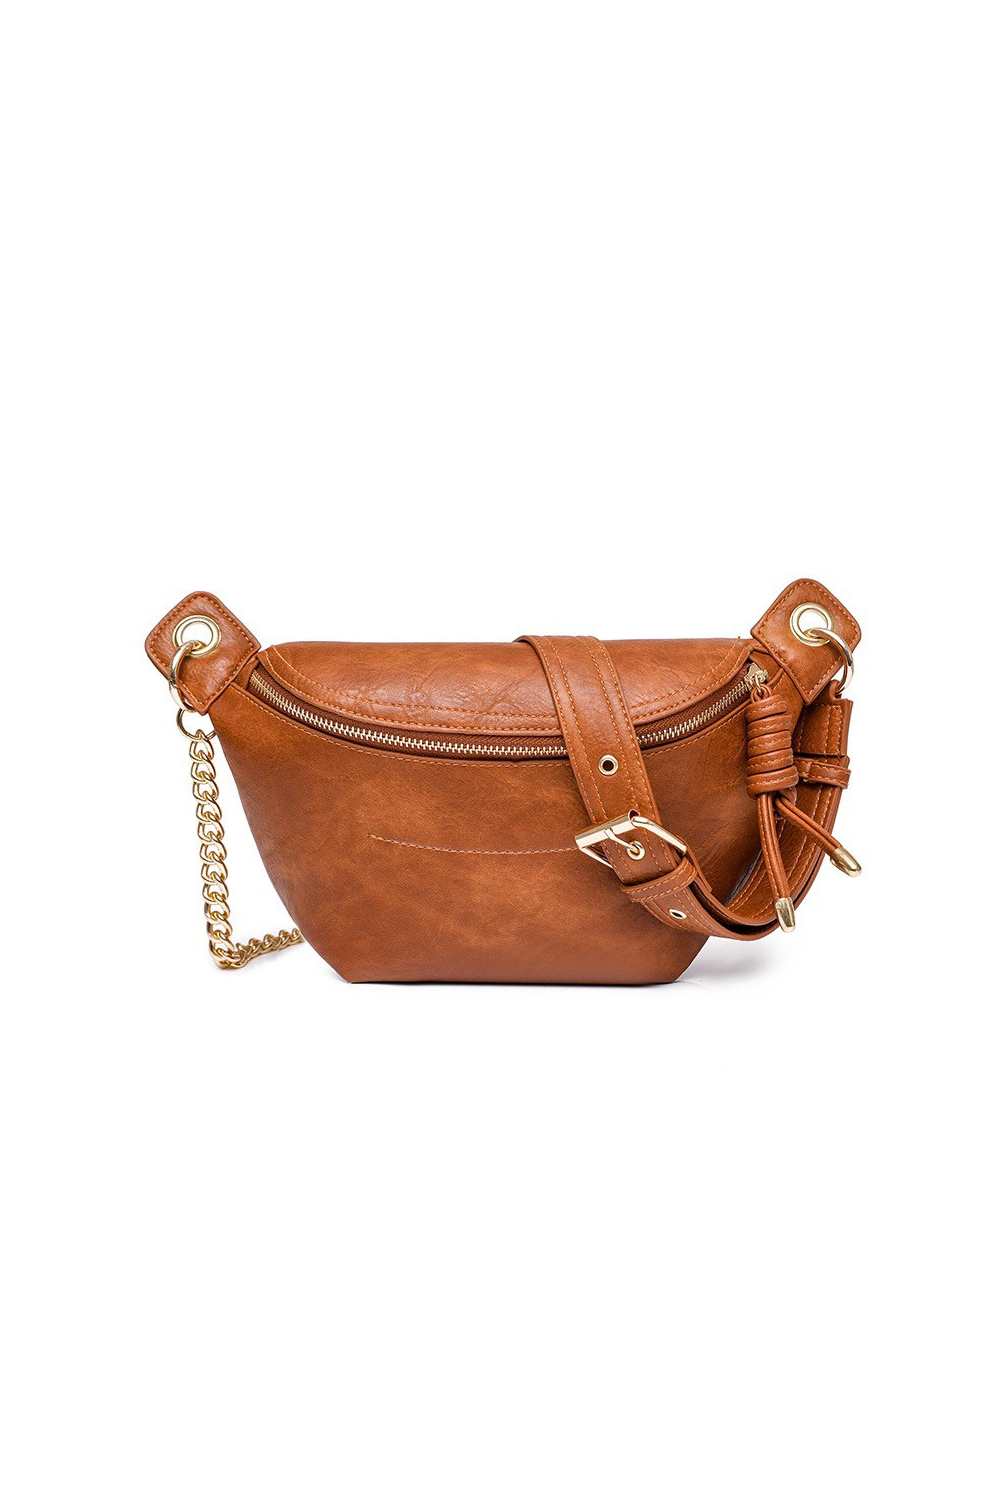 Luxe Convertible Sling Belt Bum Bag in Cognac